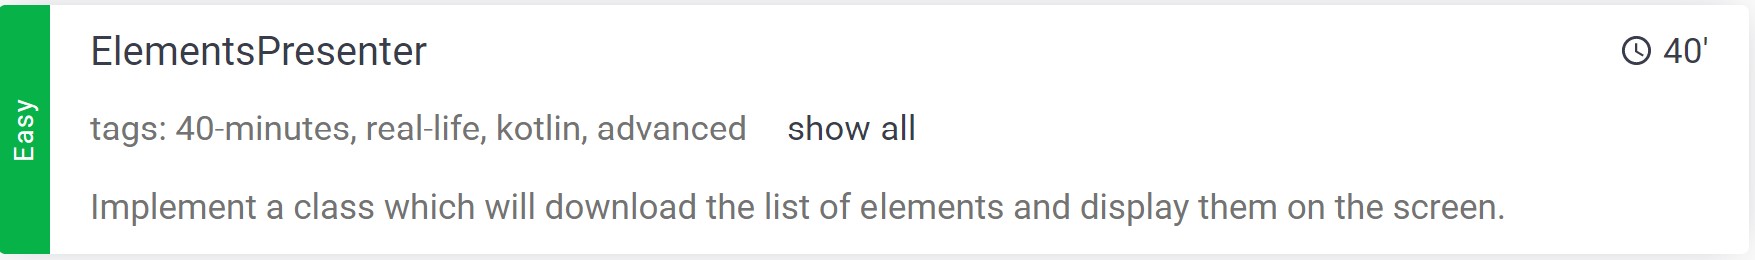 ElementsPresenter.jpg